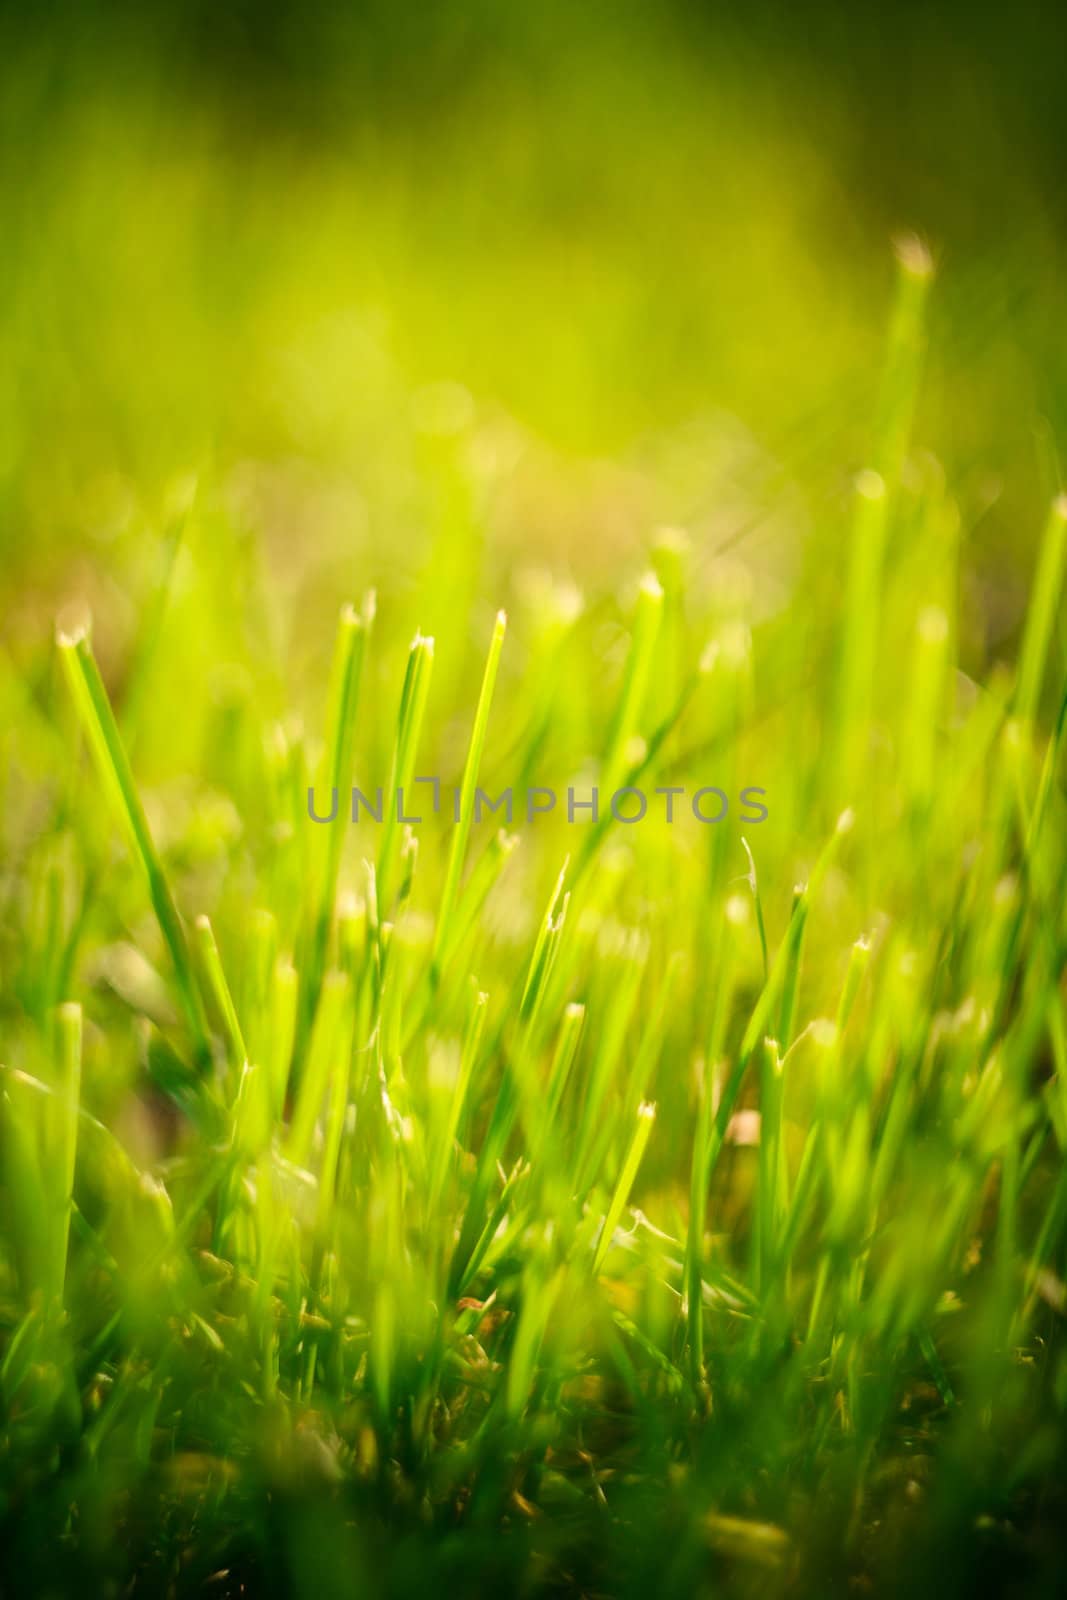 green summer grass in sunlight